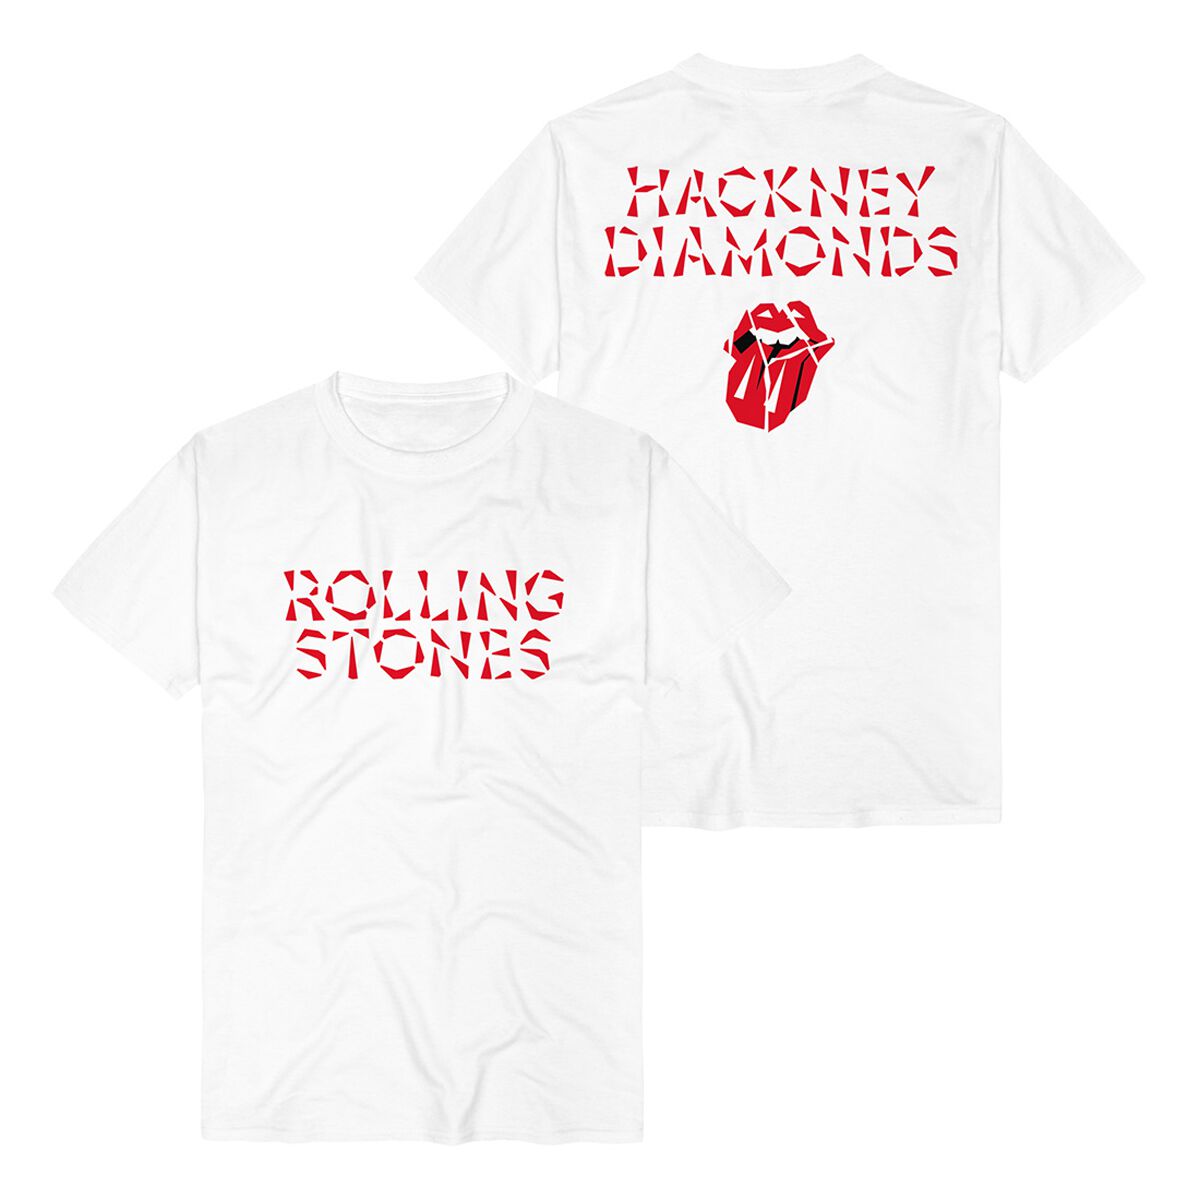 The Rolling Stones T-Shirt - Hackney Diamonds Logo - S bis XXL - für Männer - Größe XL - weiß  - Lizenziertes Merchandise!